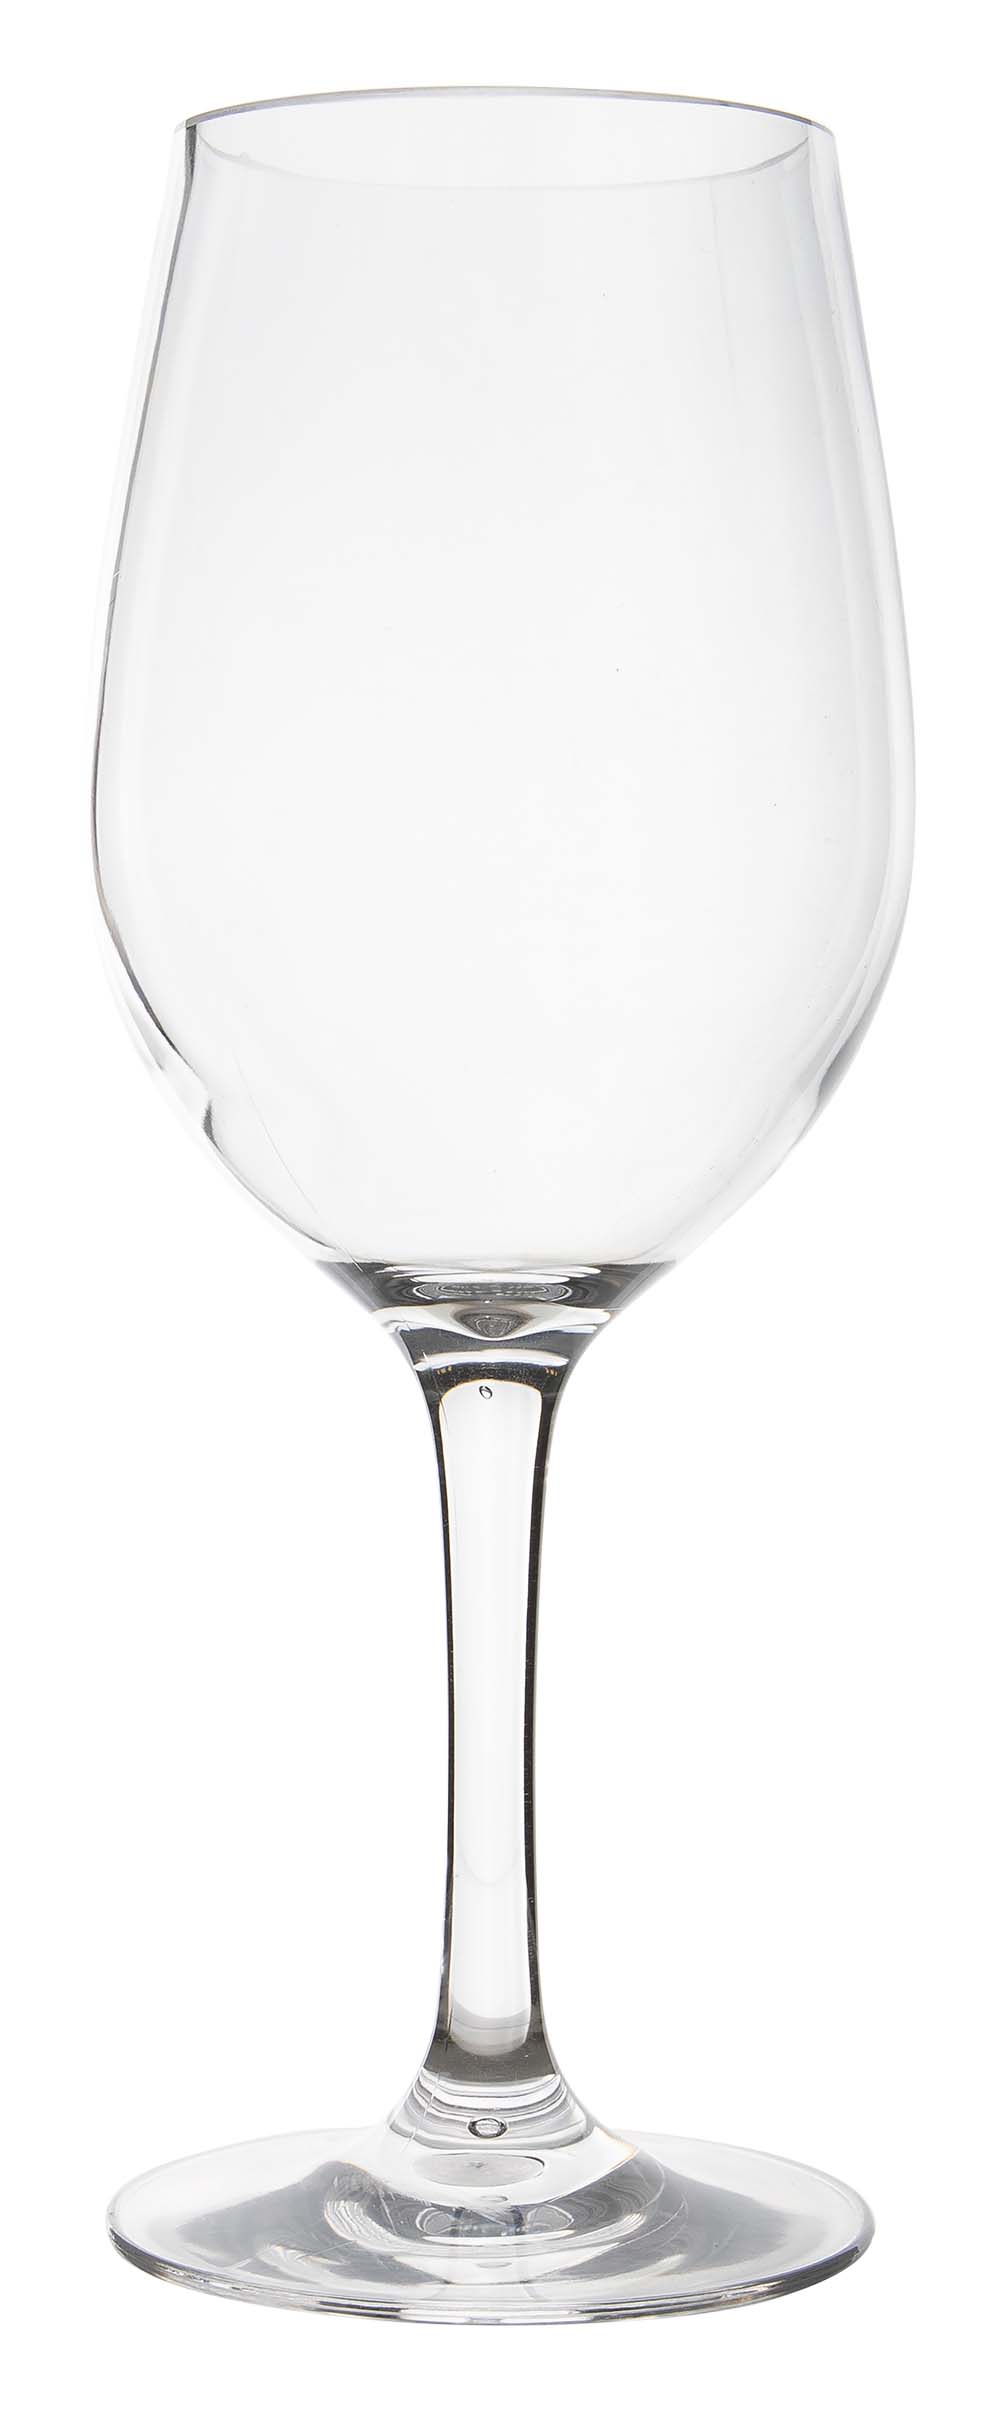 6915151 Een witte wijnglas uit de Linea line collectie. Vrijwel onbreekbaar door hoogwaardig MS materiaal. Zeer gemakkelijk te reinigen en langdurig te gebruiken, wat het glas erg duurzaam maakt. Daarnaast is het witte wijnglas erg lichtgewicht en krasbestendig. Inhoud: 380 ml.